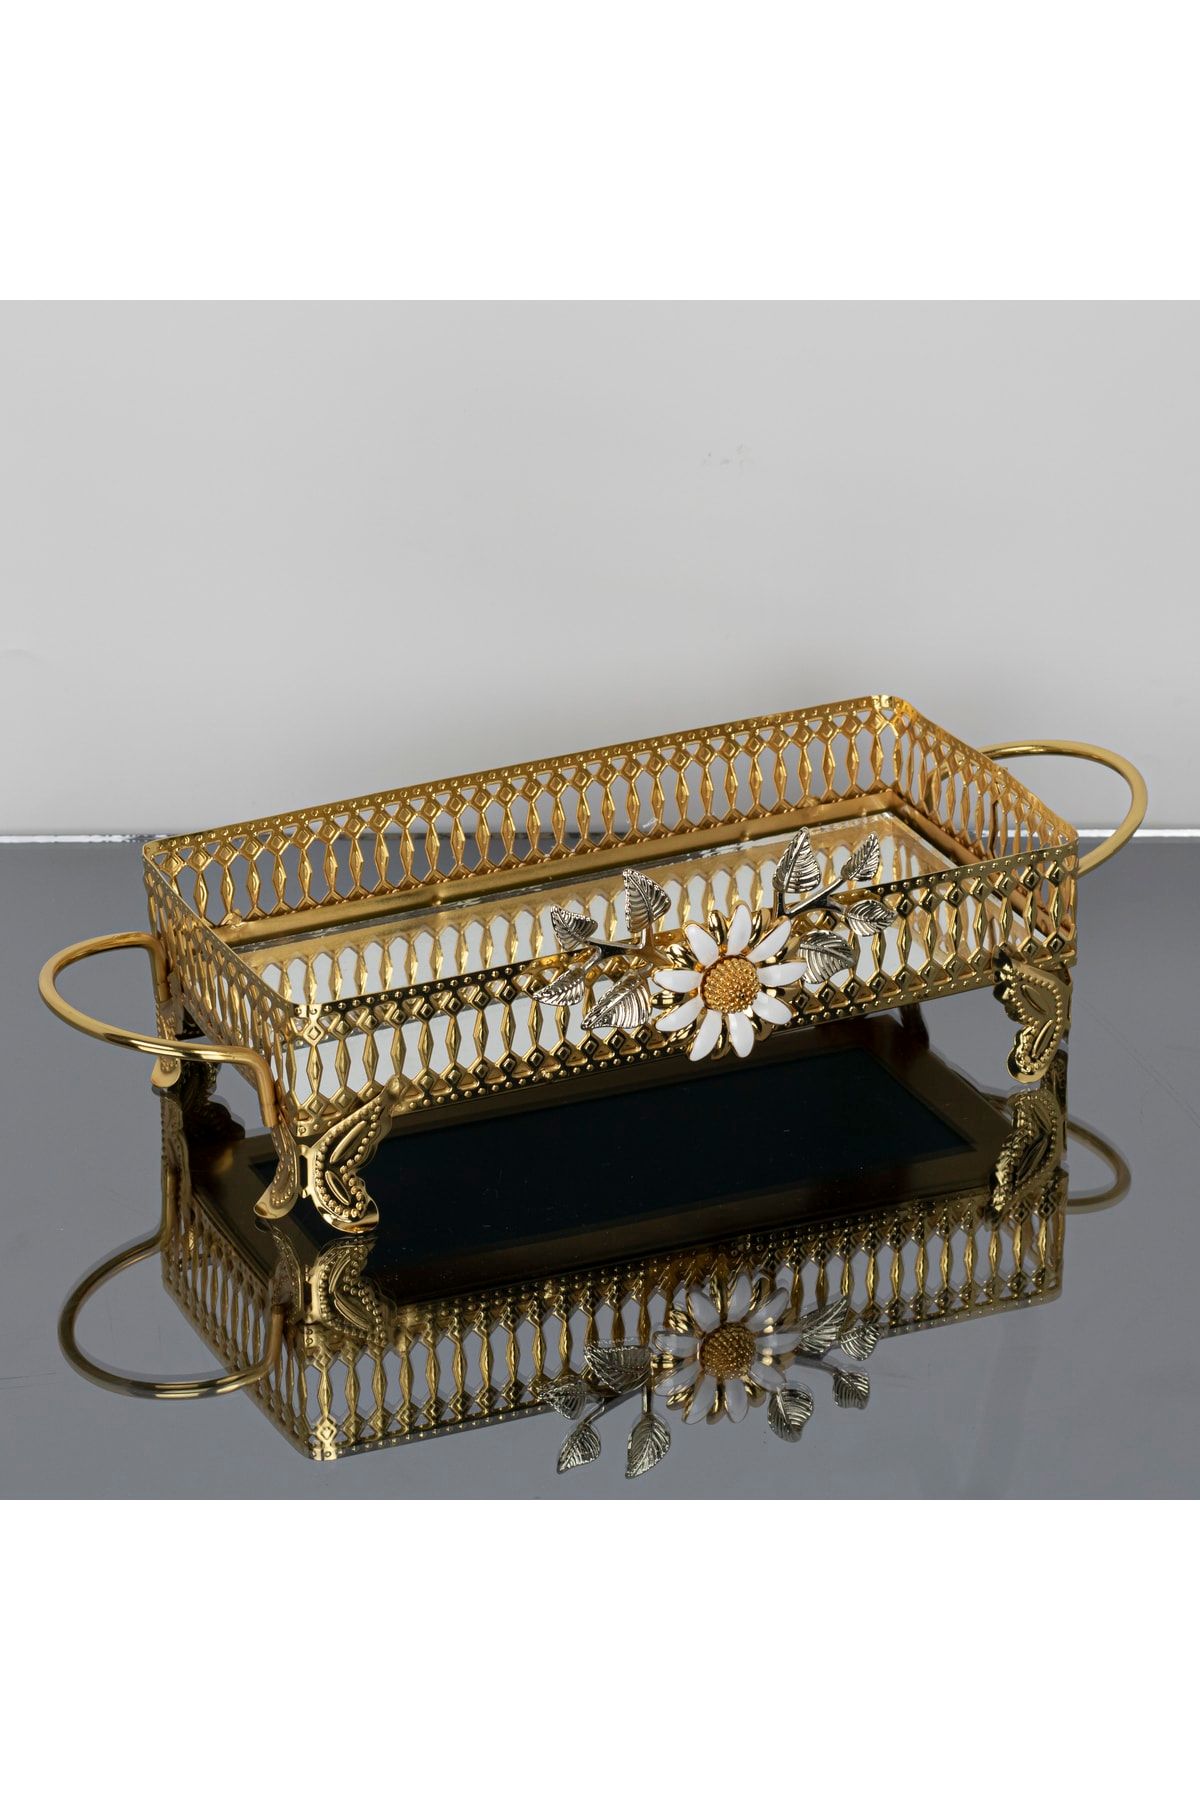 İnova Home Decor Firuze Çiçek Detaylı Gold - Gümüş Aynalı Sunum - Tepsisi - Çay Tepsisi 26 X 13 Cm - Küçük Boy